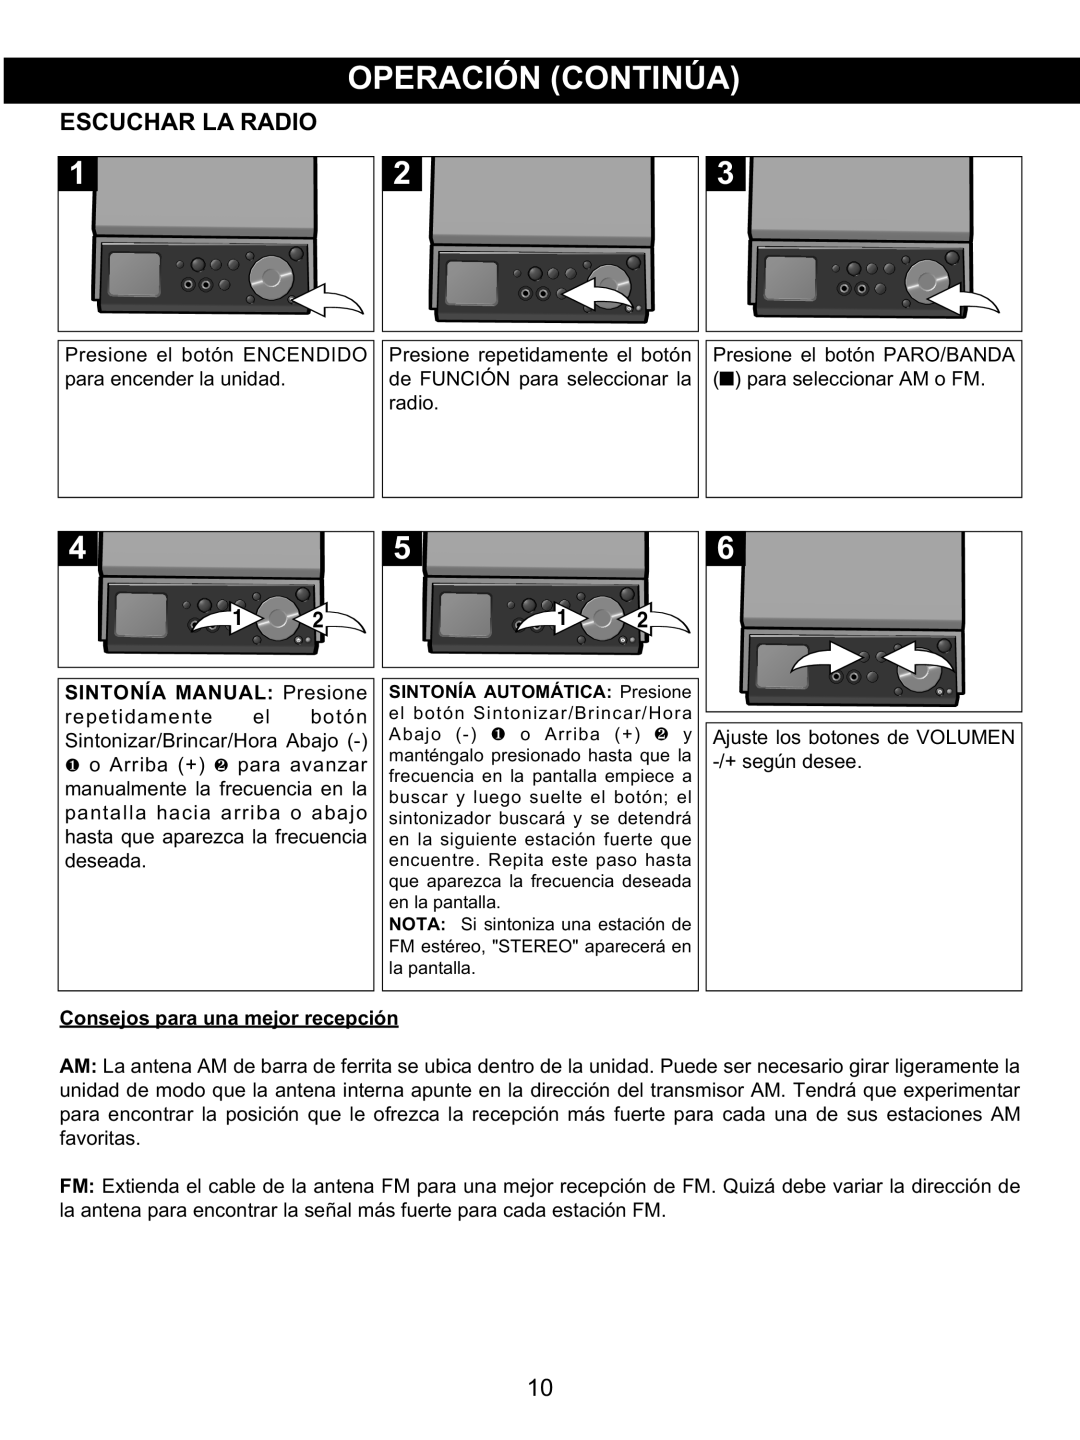 Memorex MX4139 manual Escuchar La Radio, SINTONÍA MANUAL Presione, Consejos para una mejor recepción 